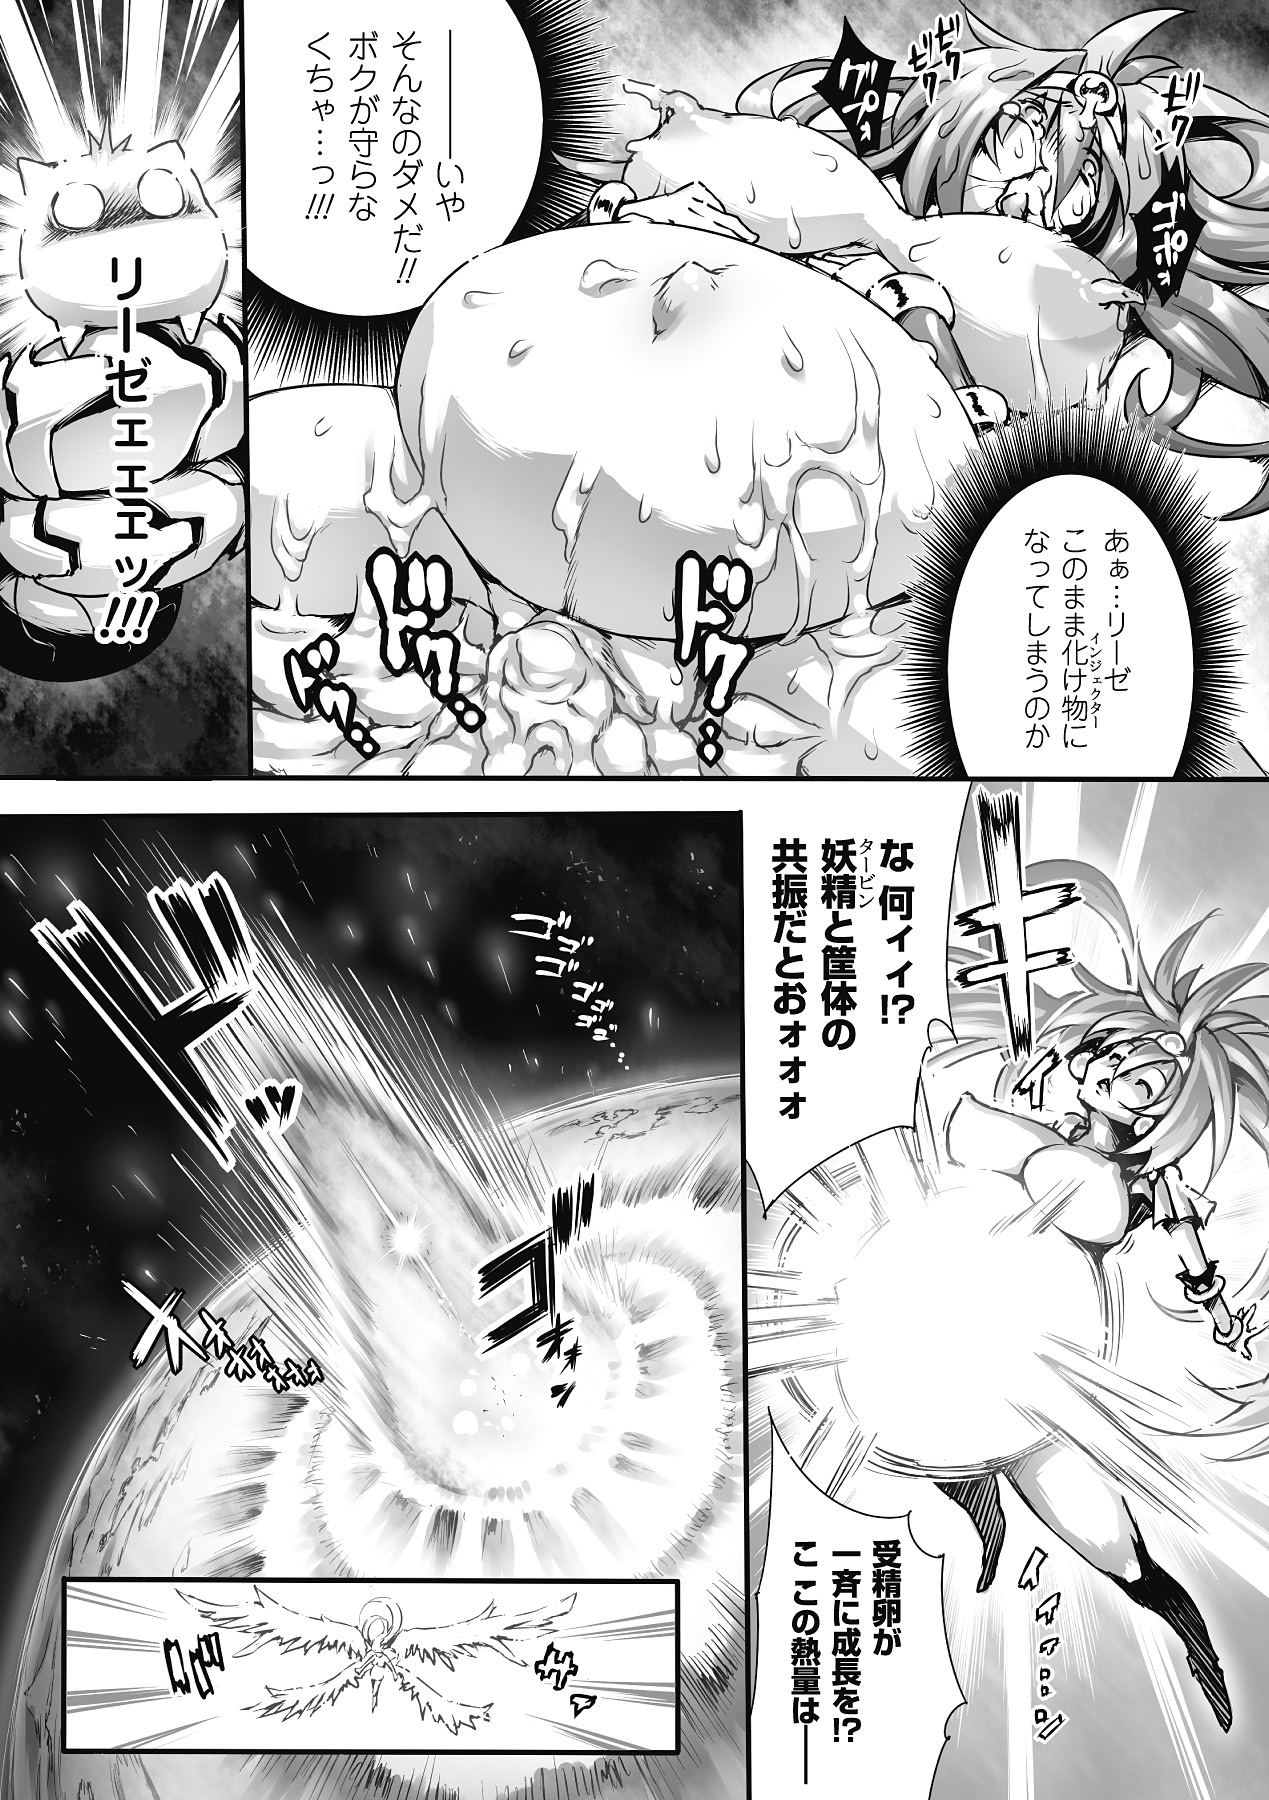 [Anthology] Nakadashi Haramase Anthology Comics Vol.8 [Digital] page 41 full